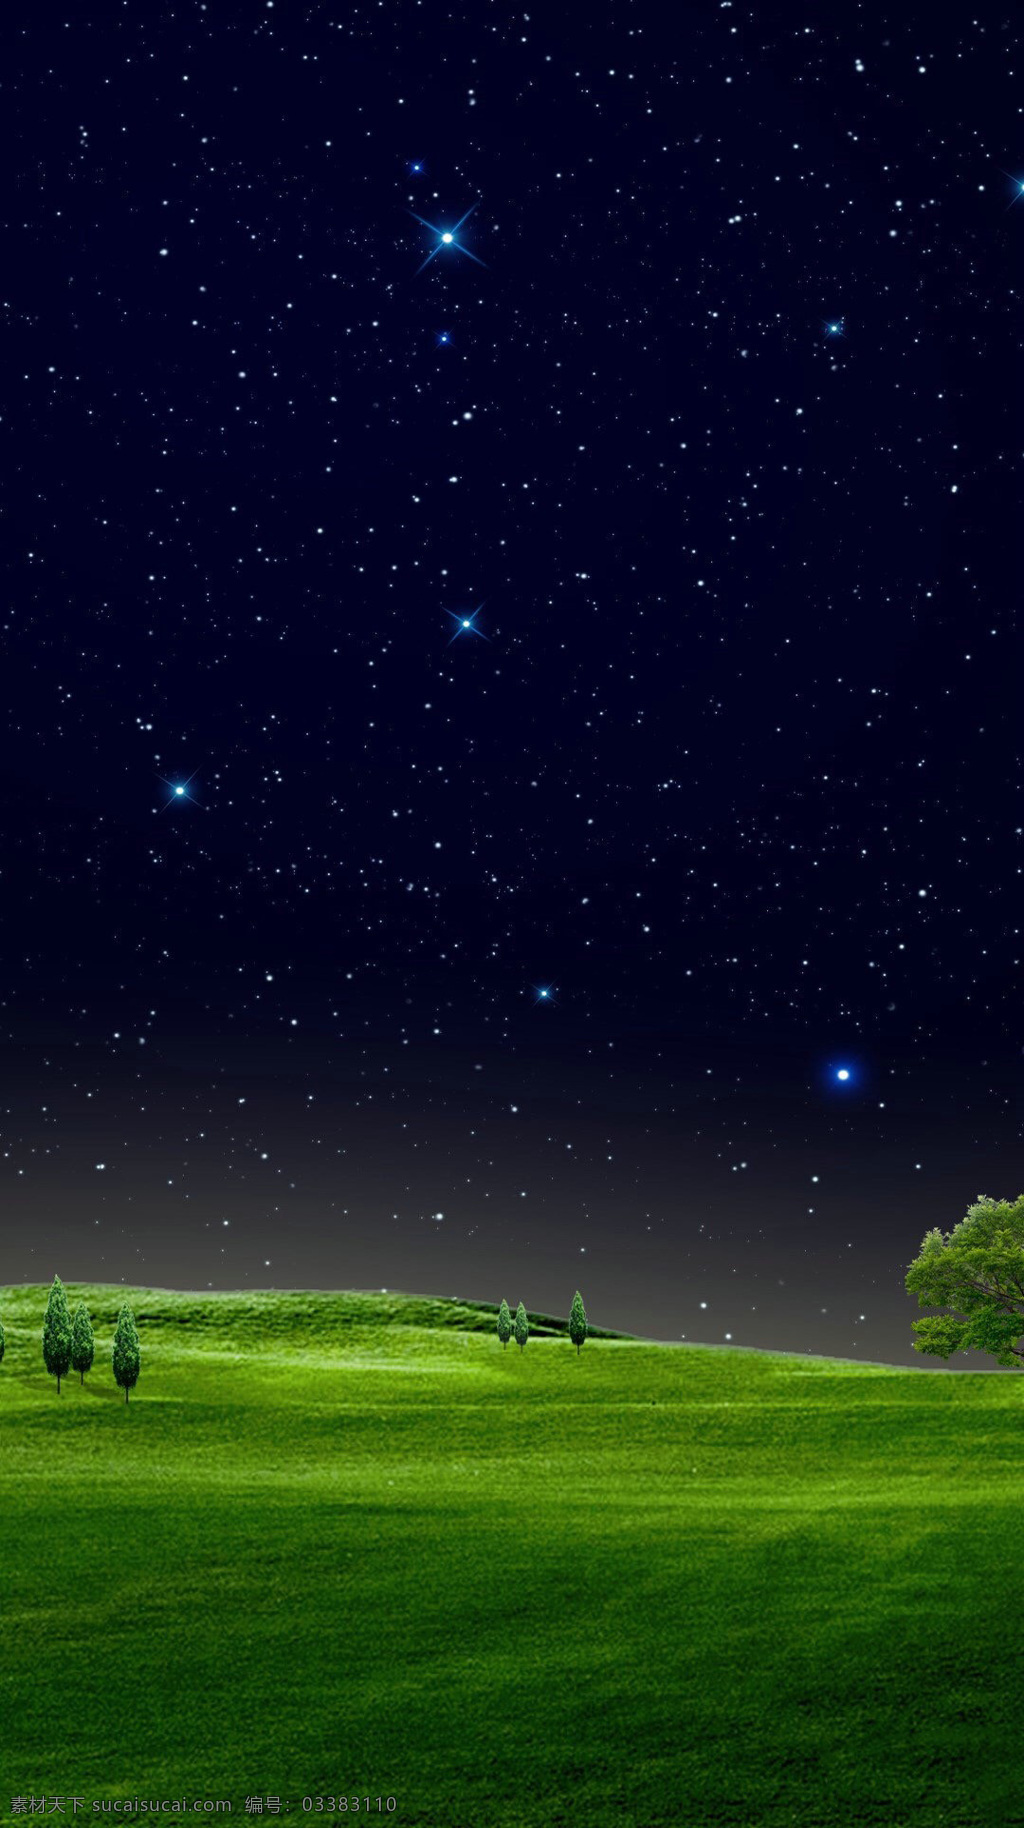 夜空 绿色 草地 h5 背景 唯美 夜空星际 绿色草地 h5背景